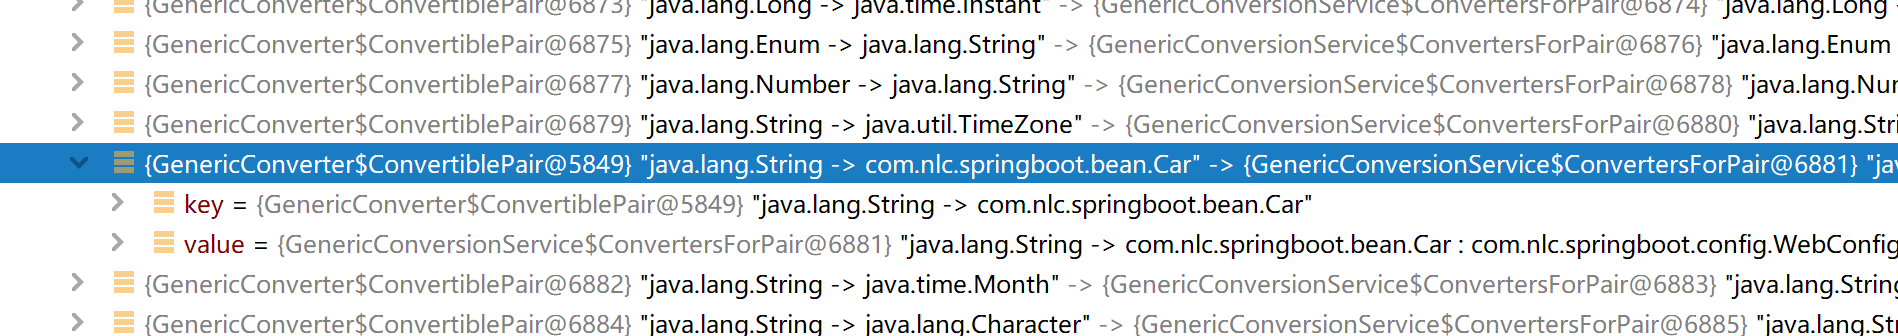 如何使用SpringBoot 自定义转换器